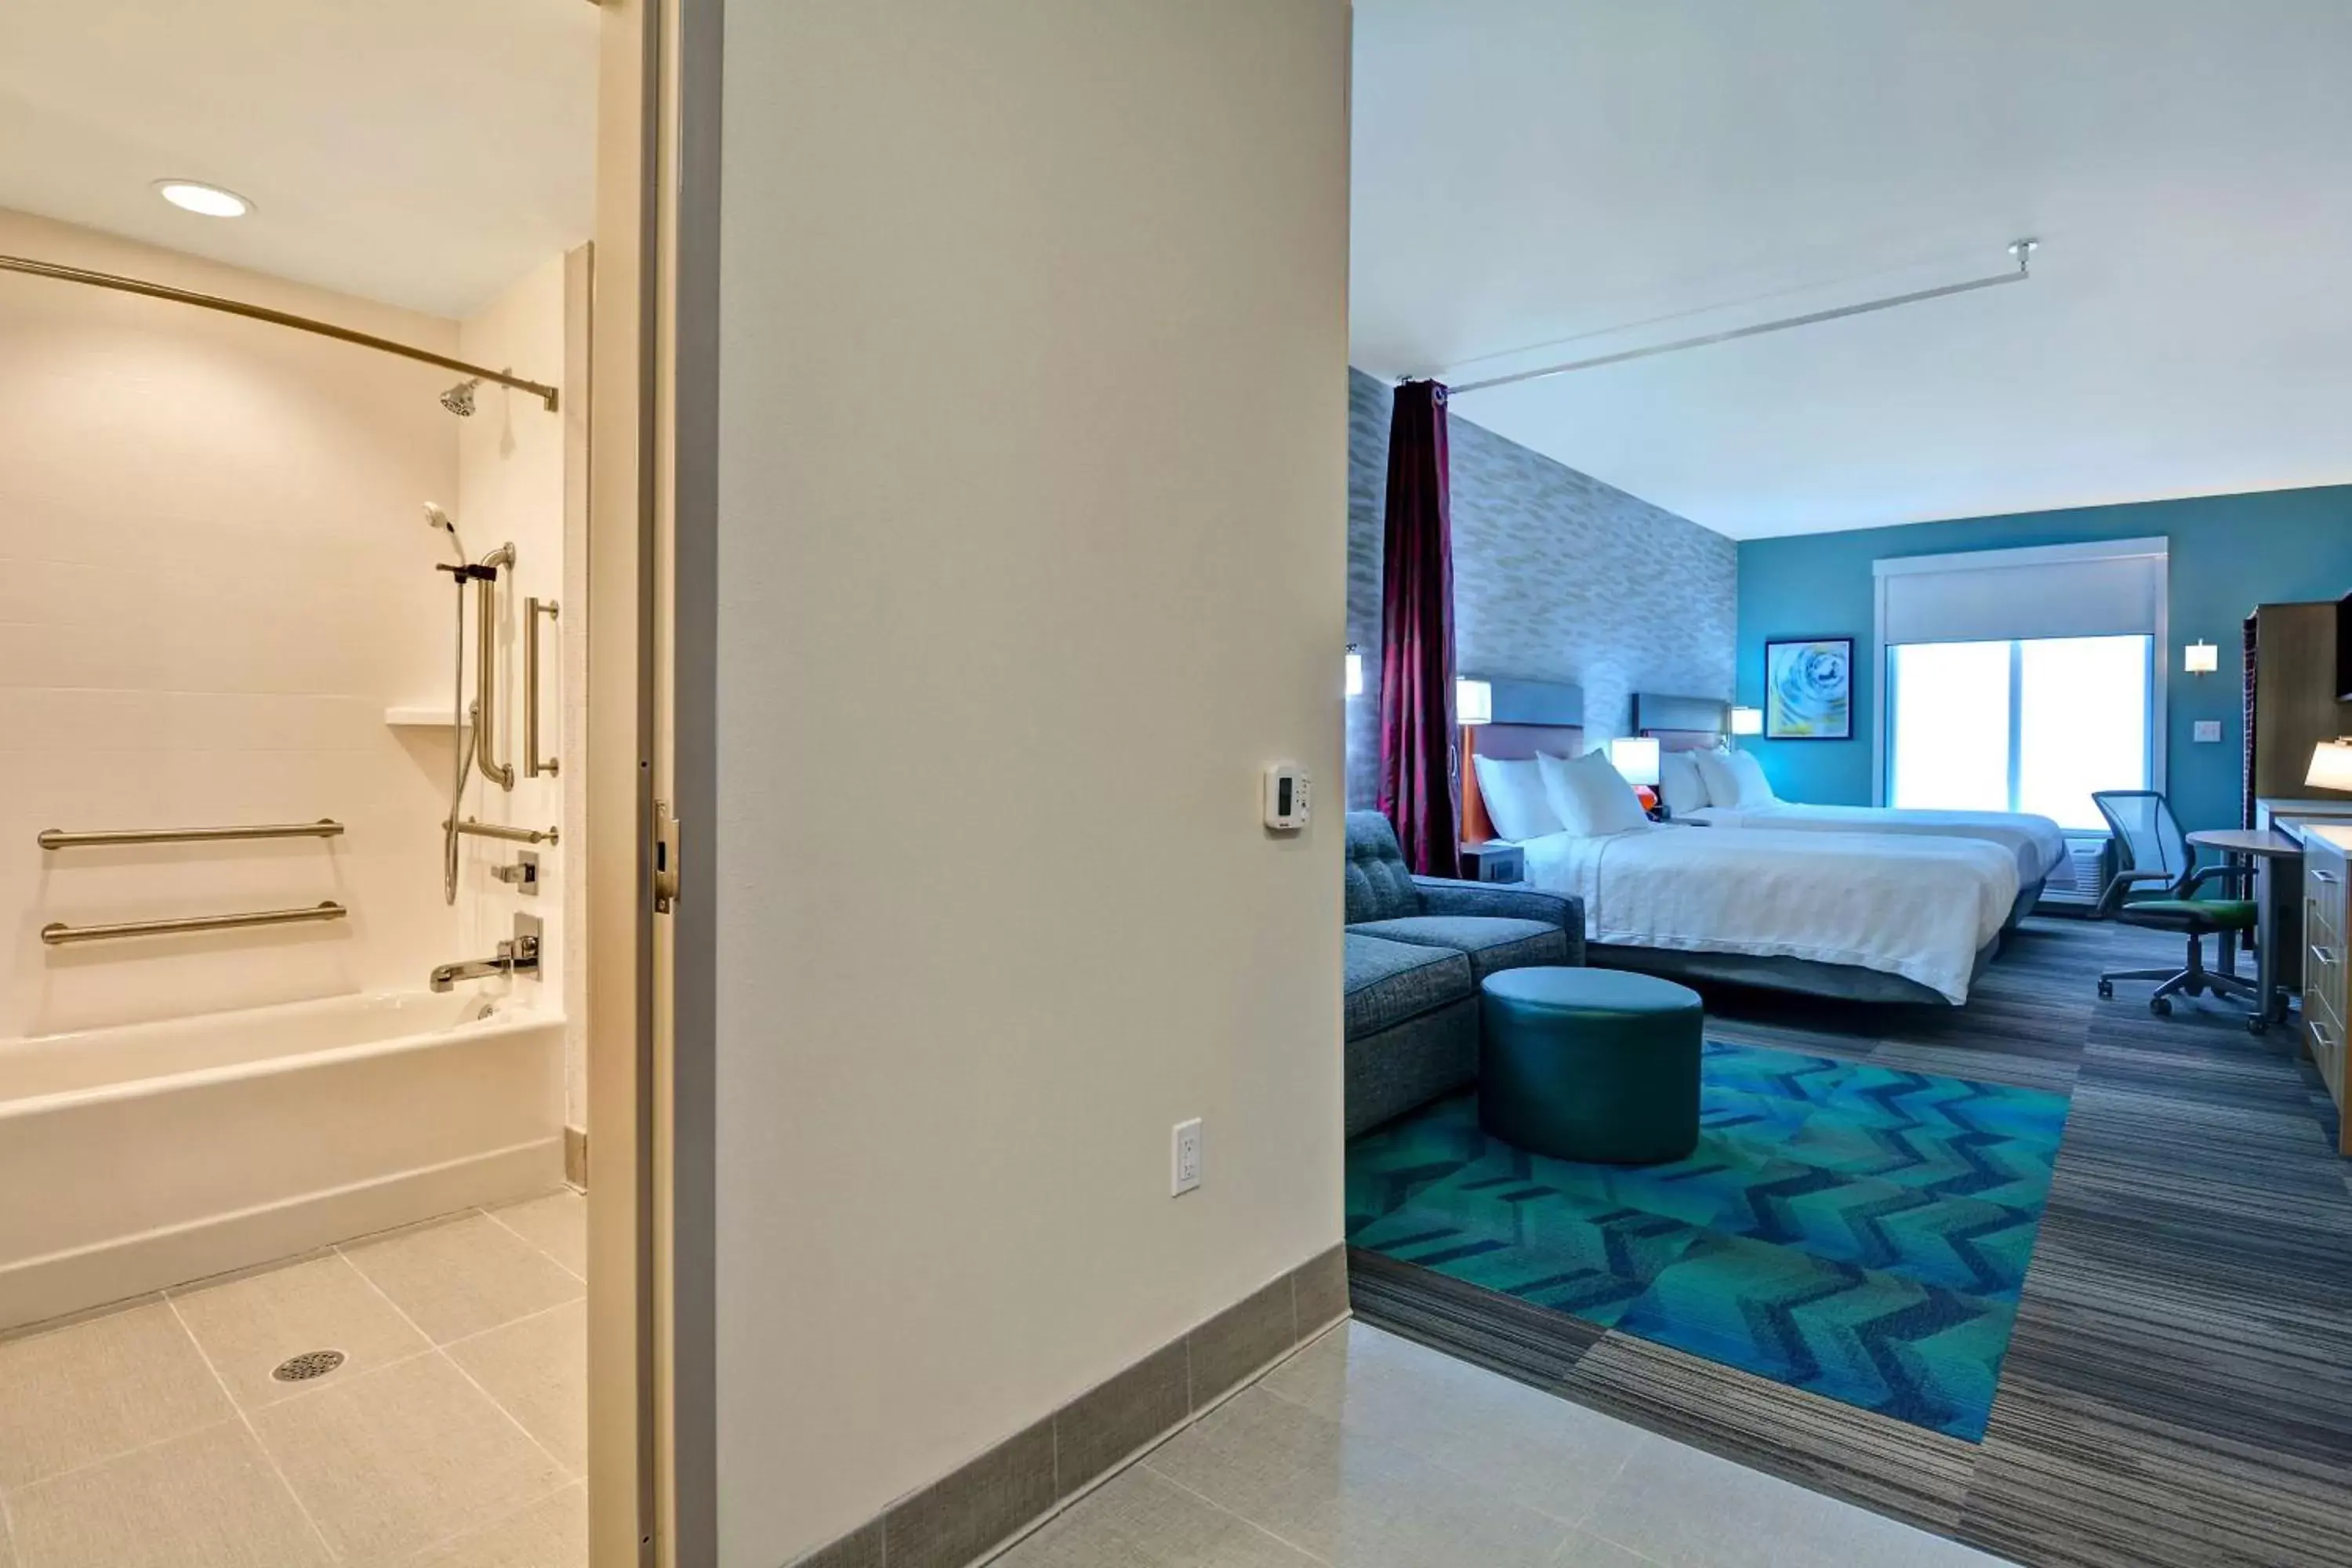 Bedroom, Bathroom in Home2 Suites By Hilton Savannah Midtown, Ga